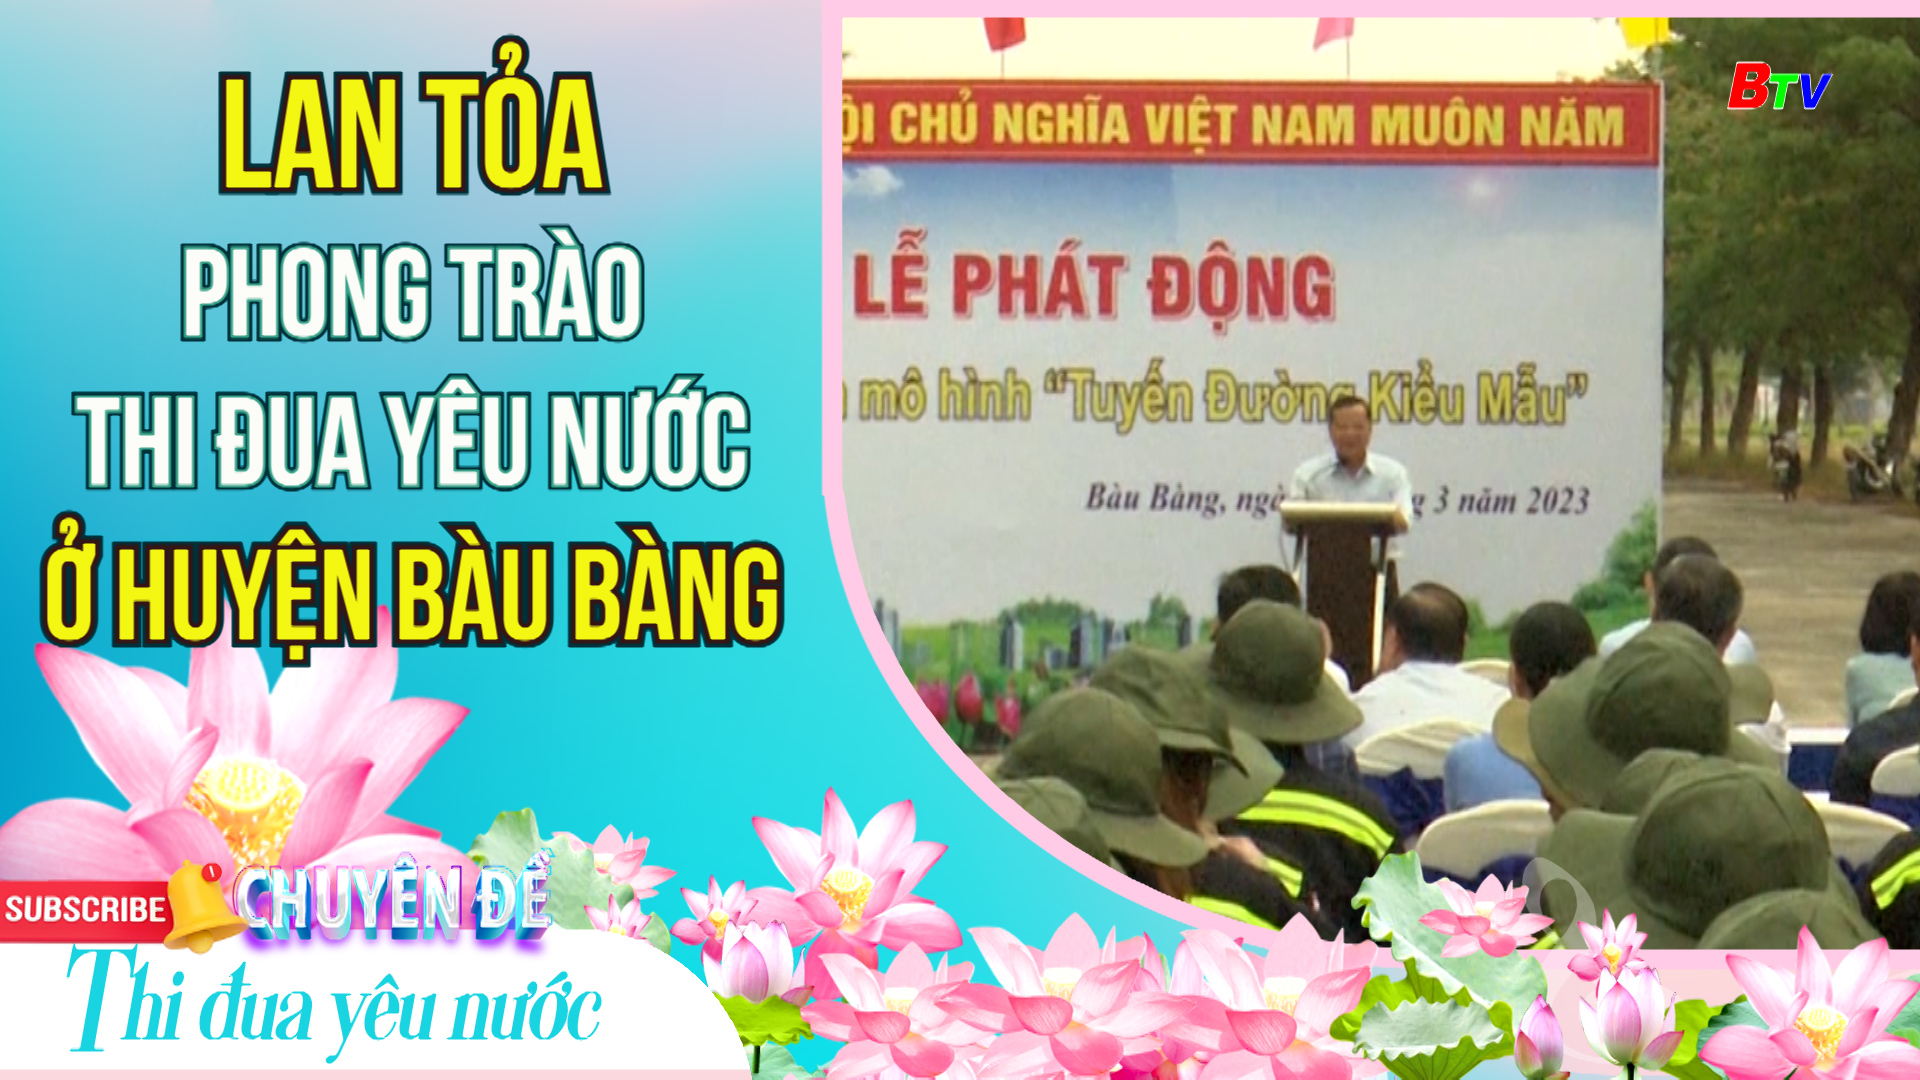 Lan tỏa phong trào thi đua yêu nước ở huyện Bàu Bàng